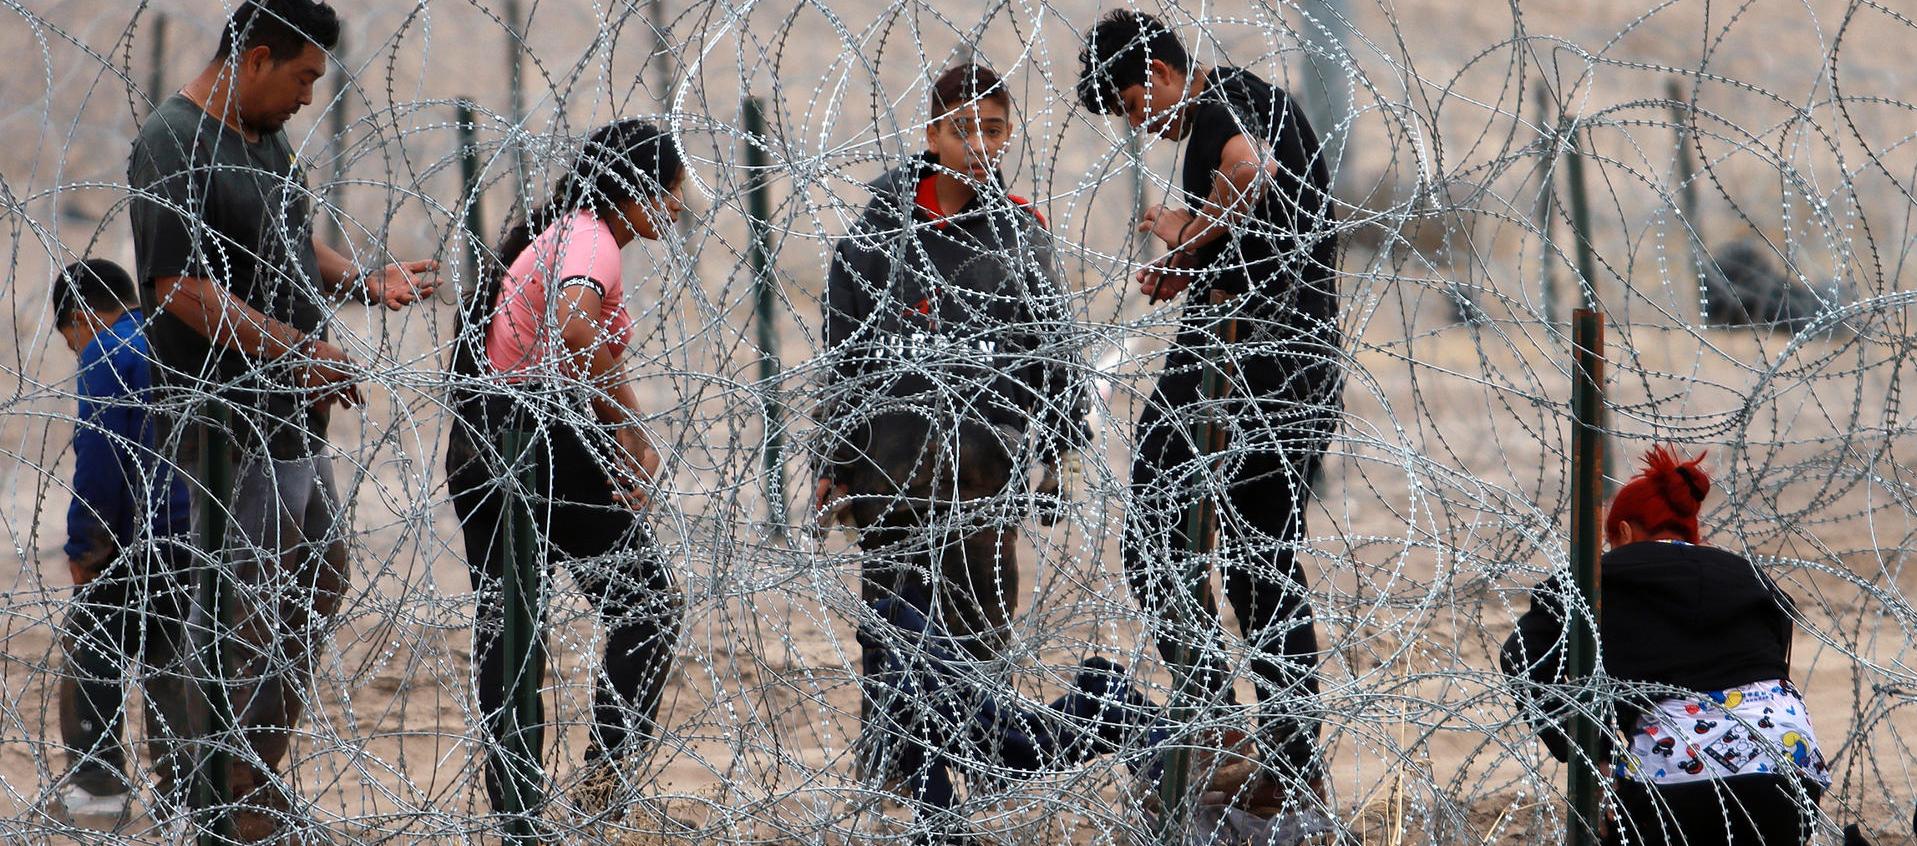 Migrantes intentan cruzar la cerca de alambres en la frontera que divide a México de los Estados Unidos. 